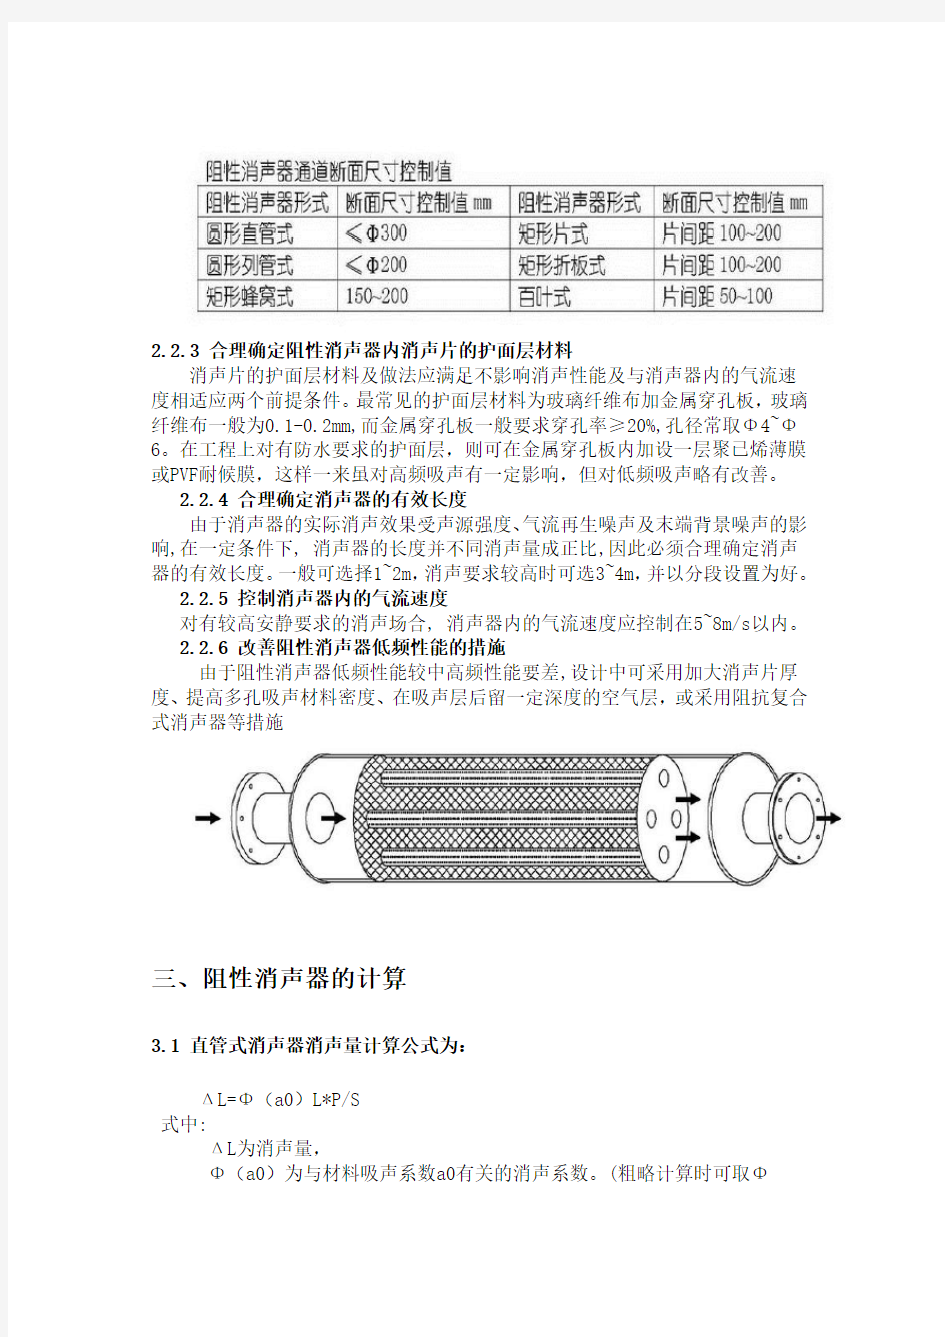 柴油机消声器的设计原理及测试方法